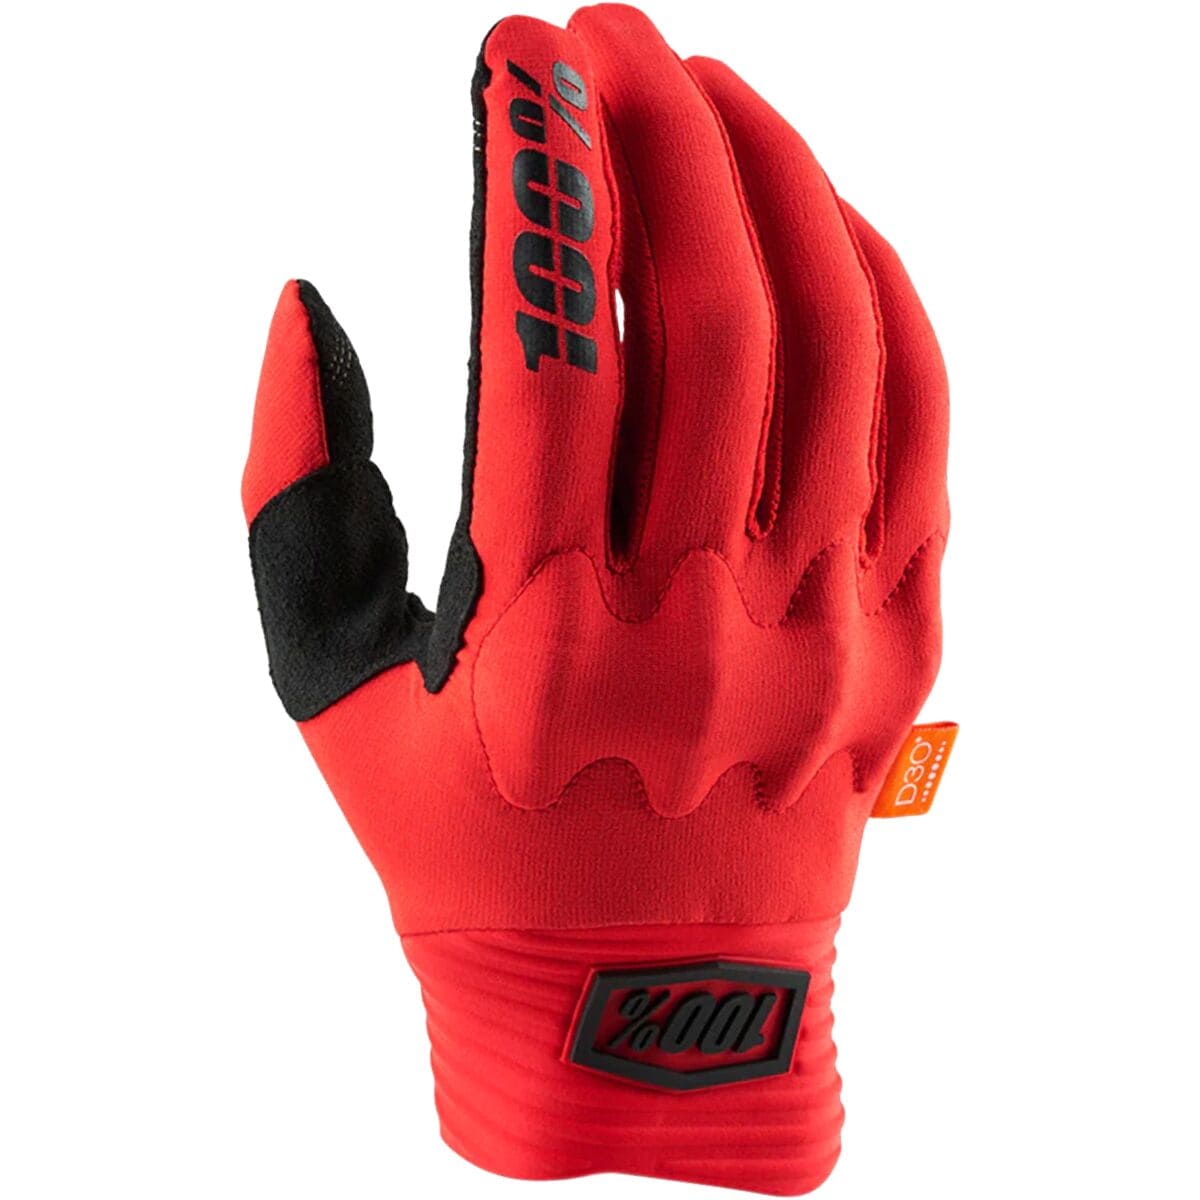 100% Cognito Glove - Men's Red, M